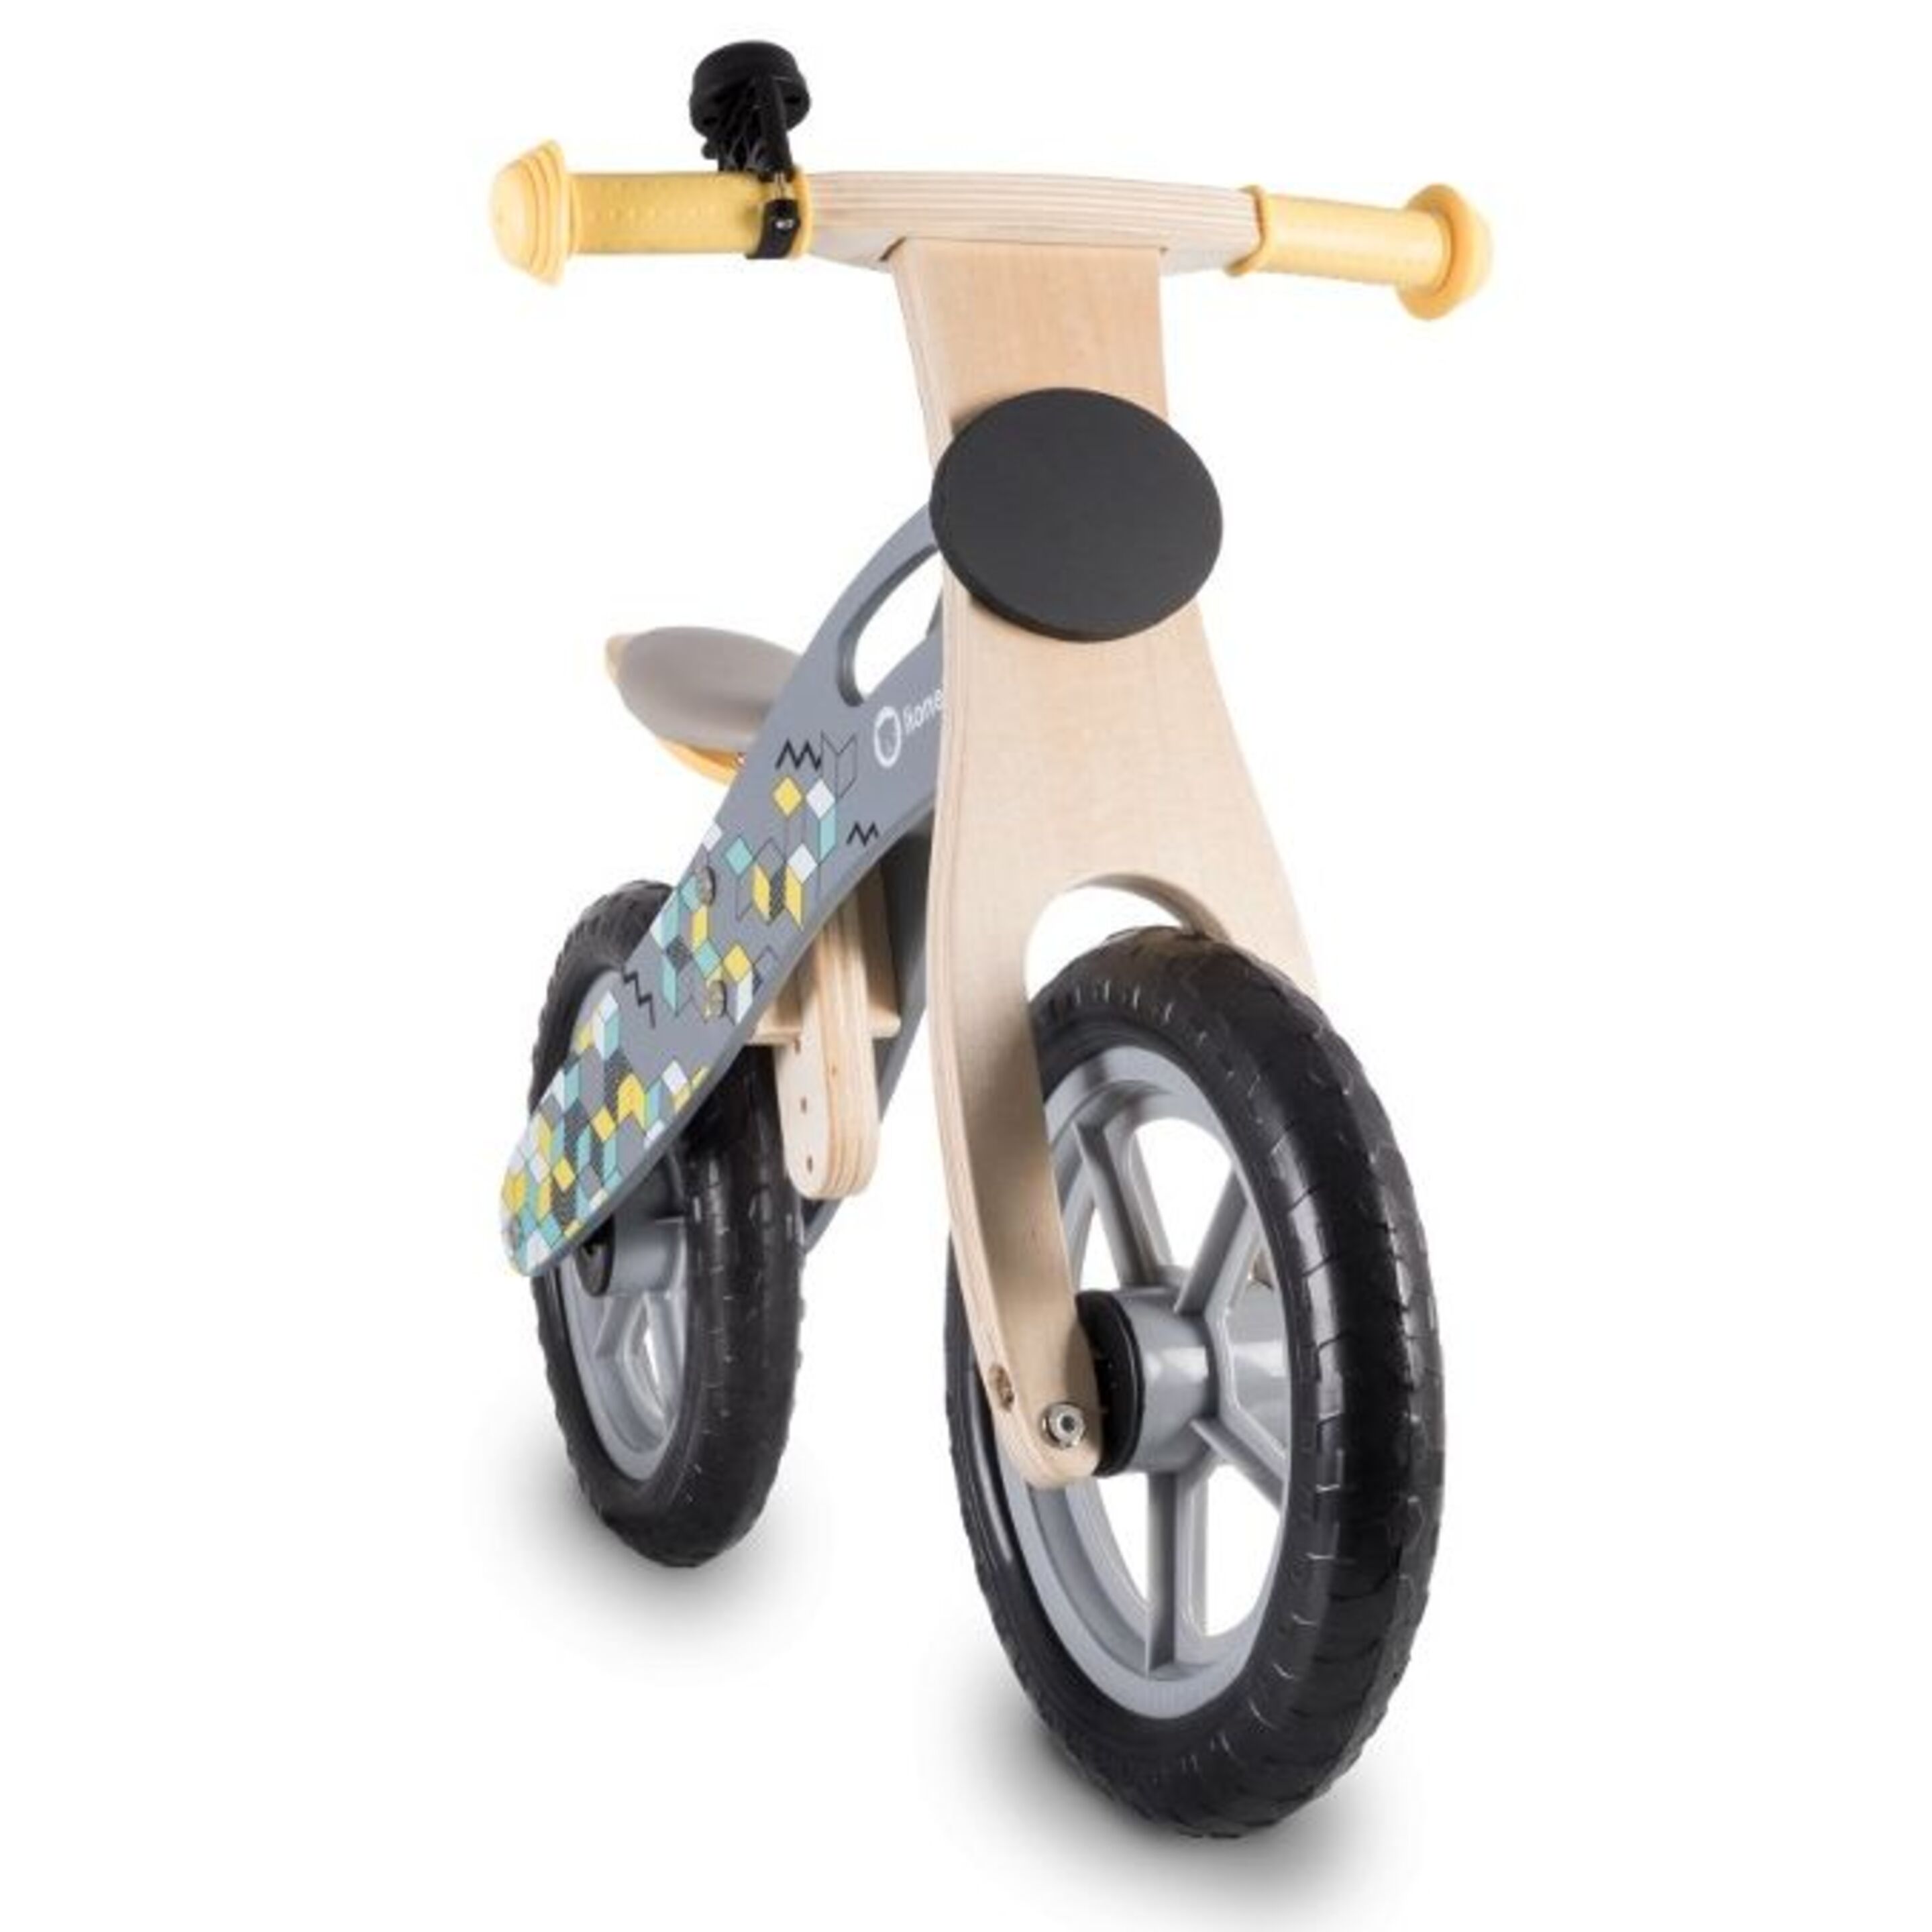 Bicicleta Infantil De Madera Casper De Lionelo